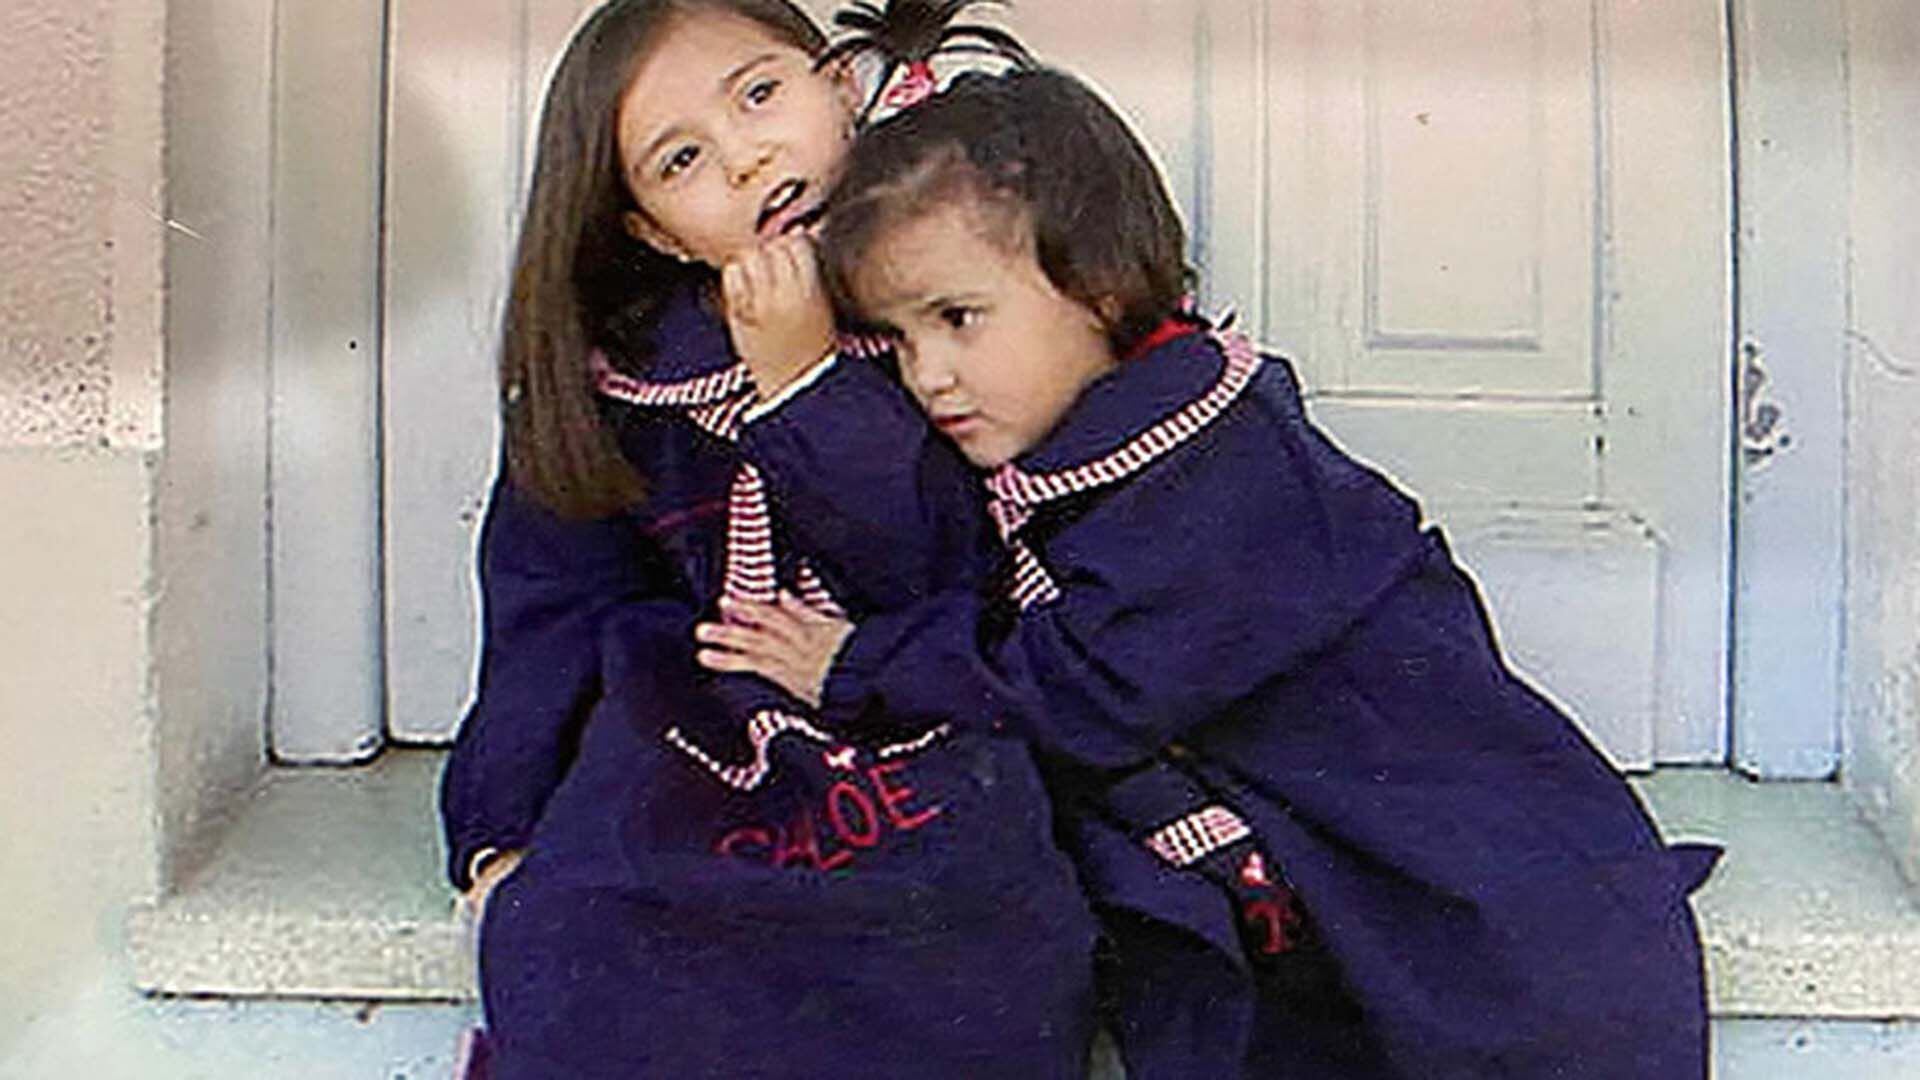 Milagros y  su hermana Chole, quien falleció de cáncer a los 7 años,  en la puerta del jardín de infantes. (Imagen: gentileza).